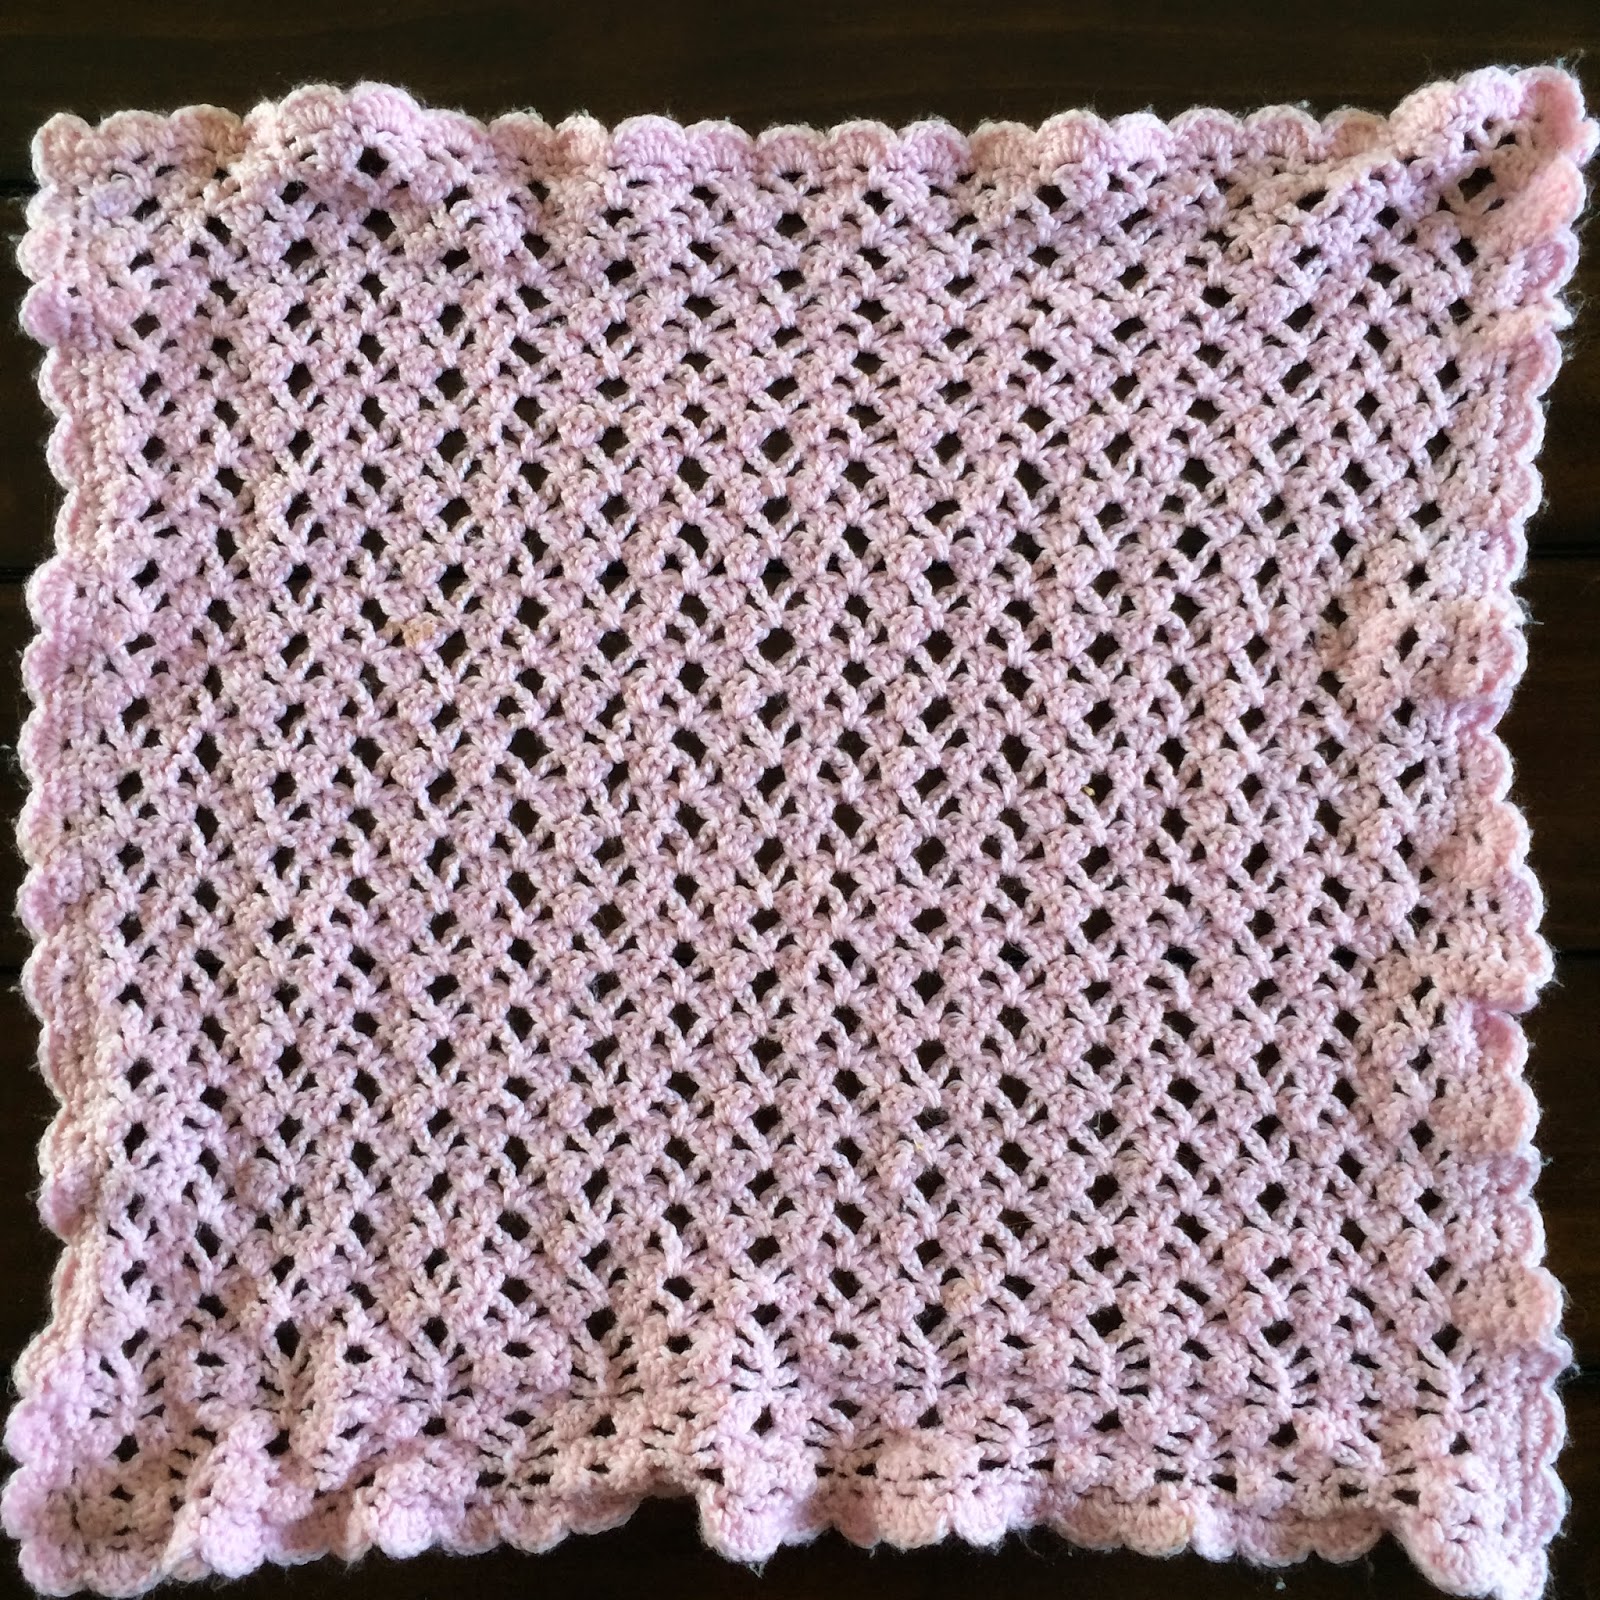 Not My Nana's Crochet!: Crochet Lacy Baby Blanket - Free Pattern